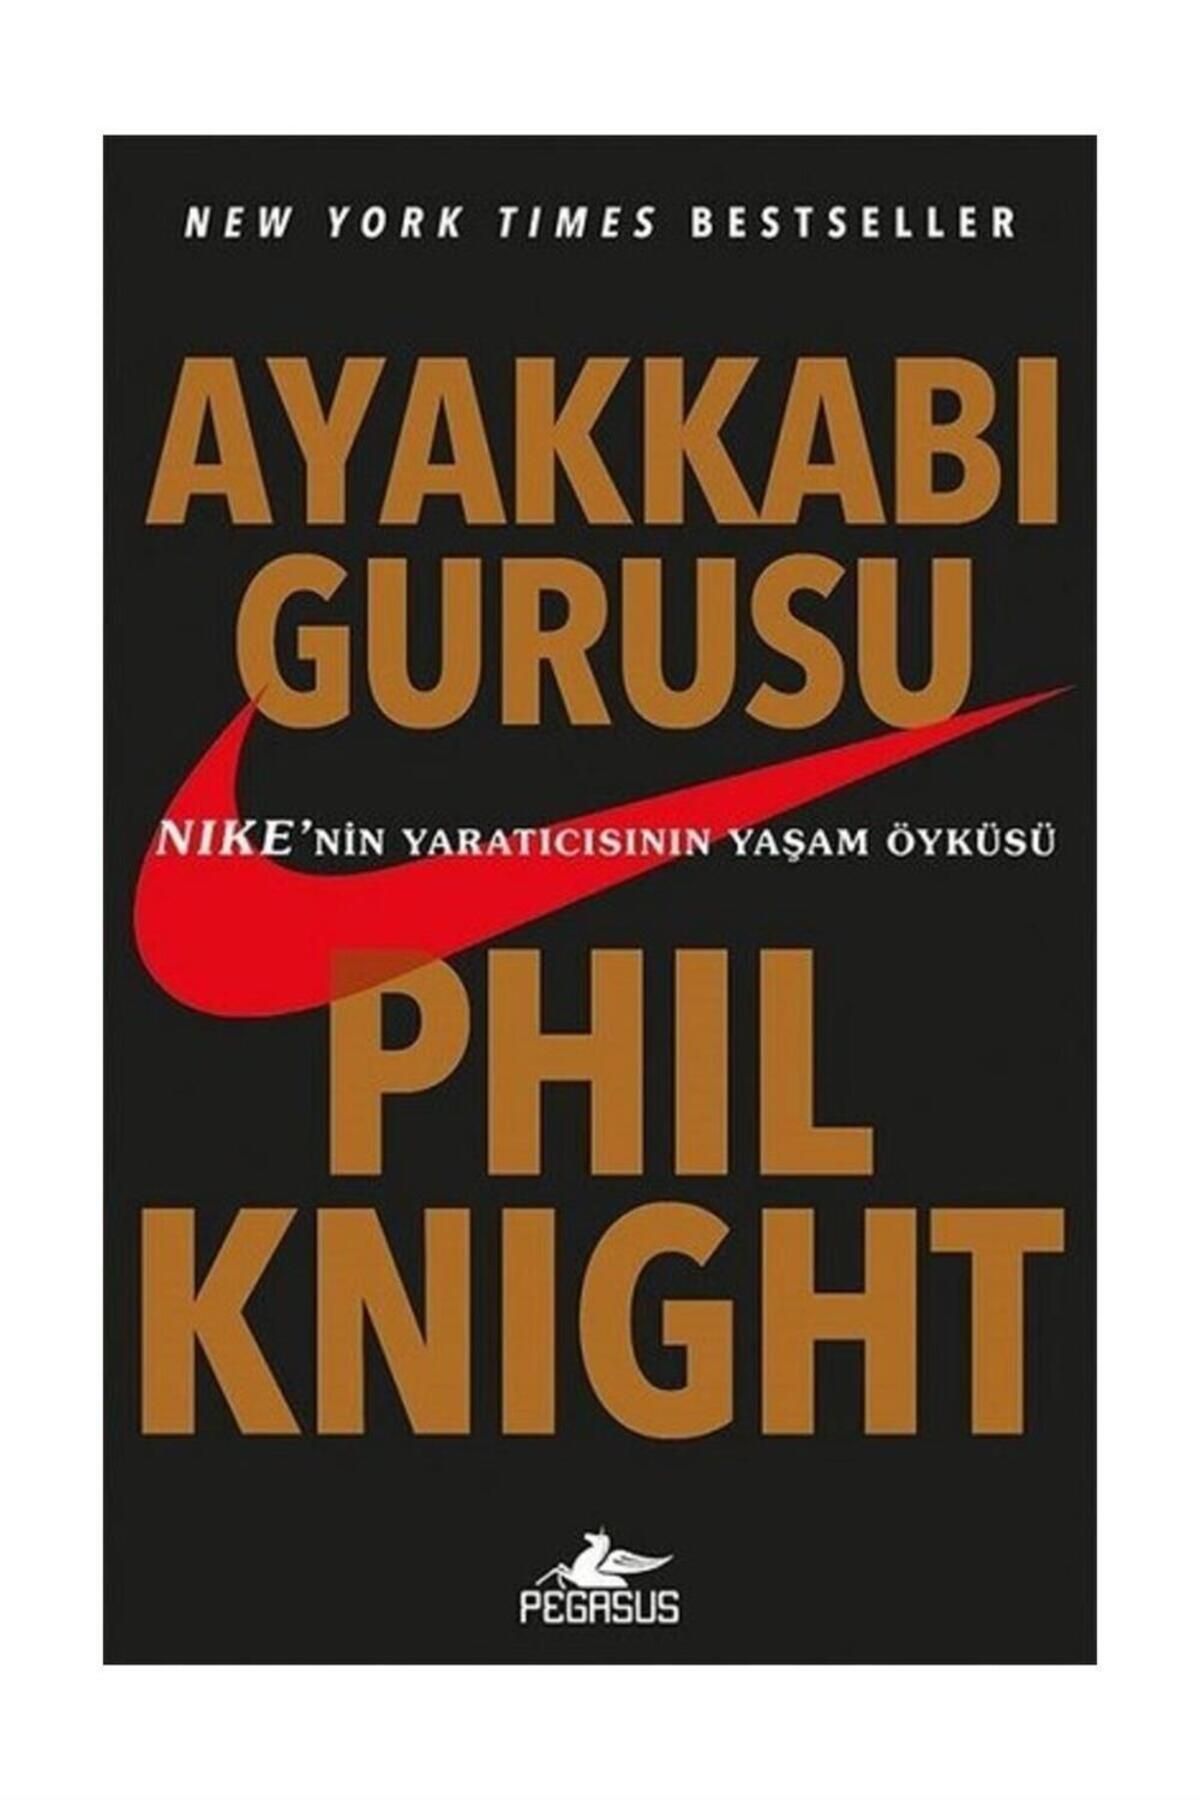 Pegasus Yayınları Ayakkabı Gurusu: Nıke’nin Yaratıcısının Yaşam Öyküsü - Phil Knight